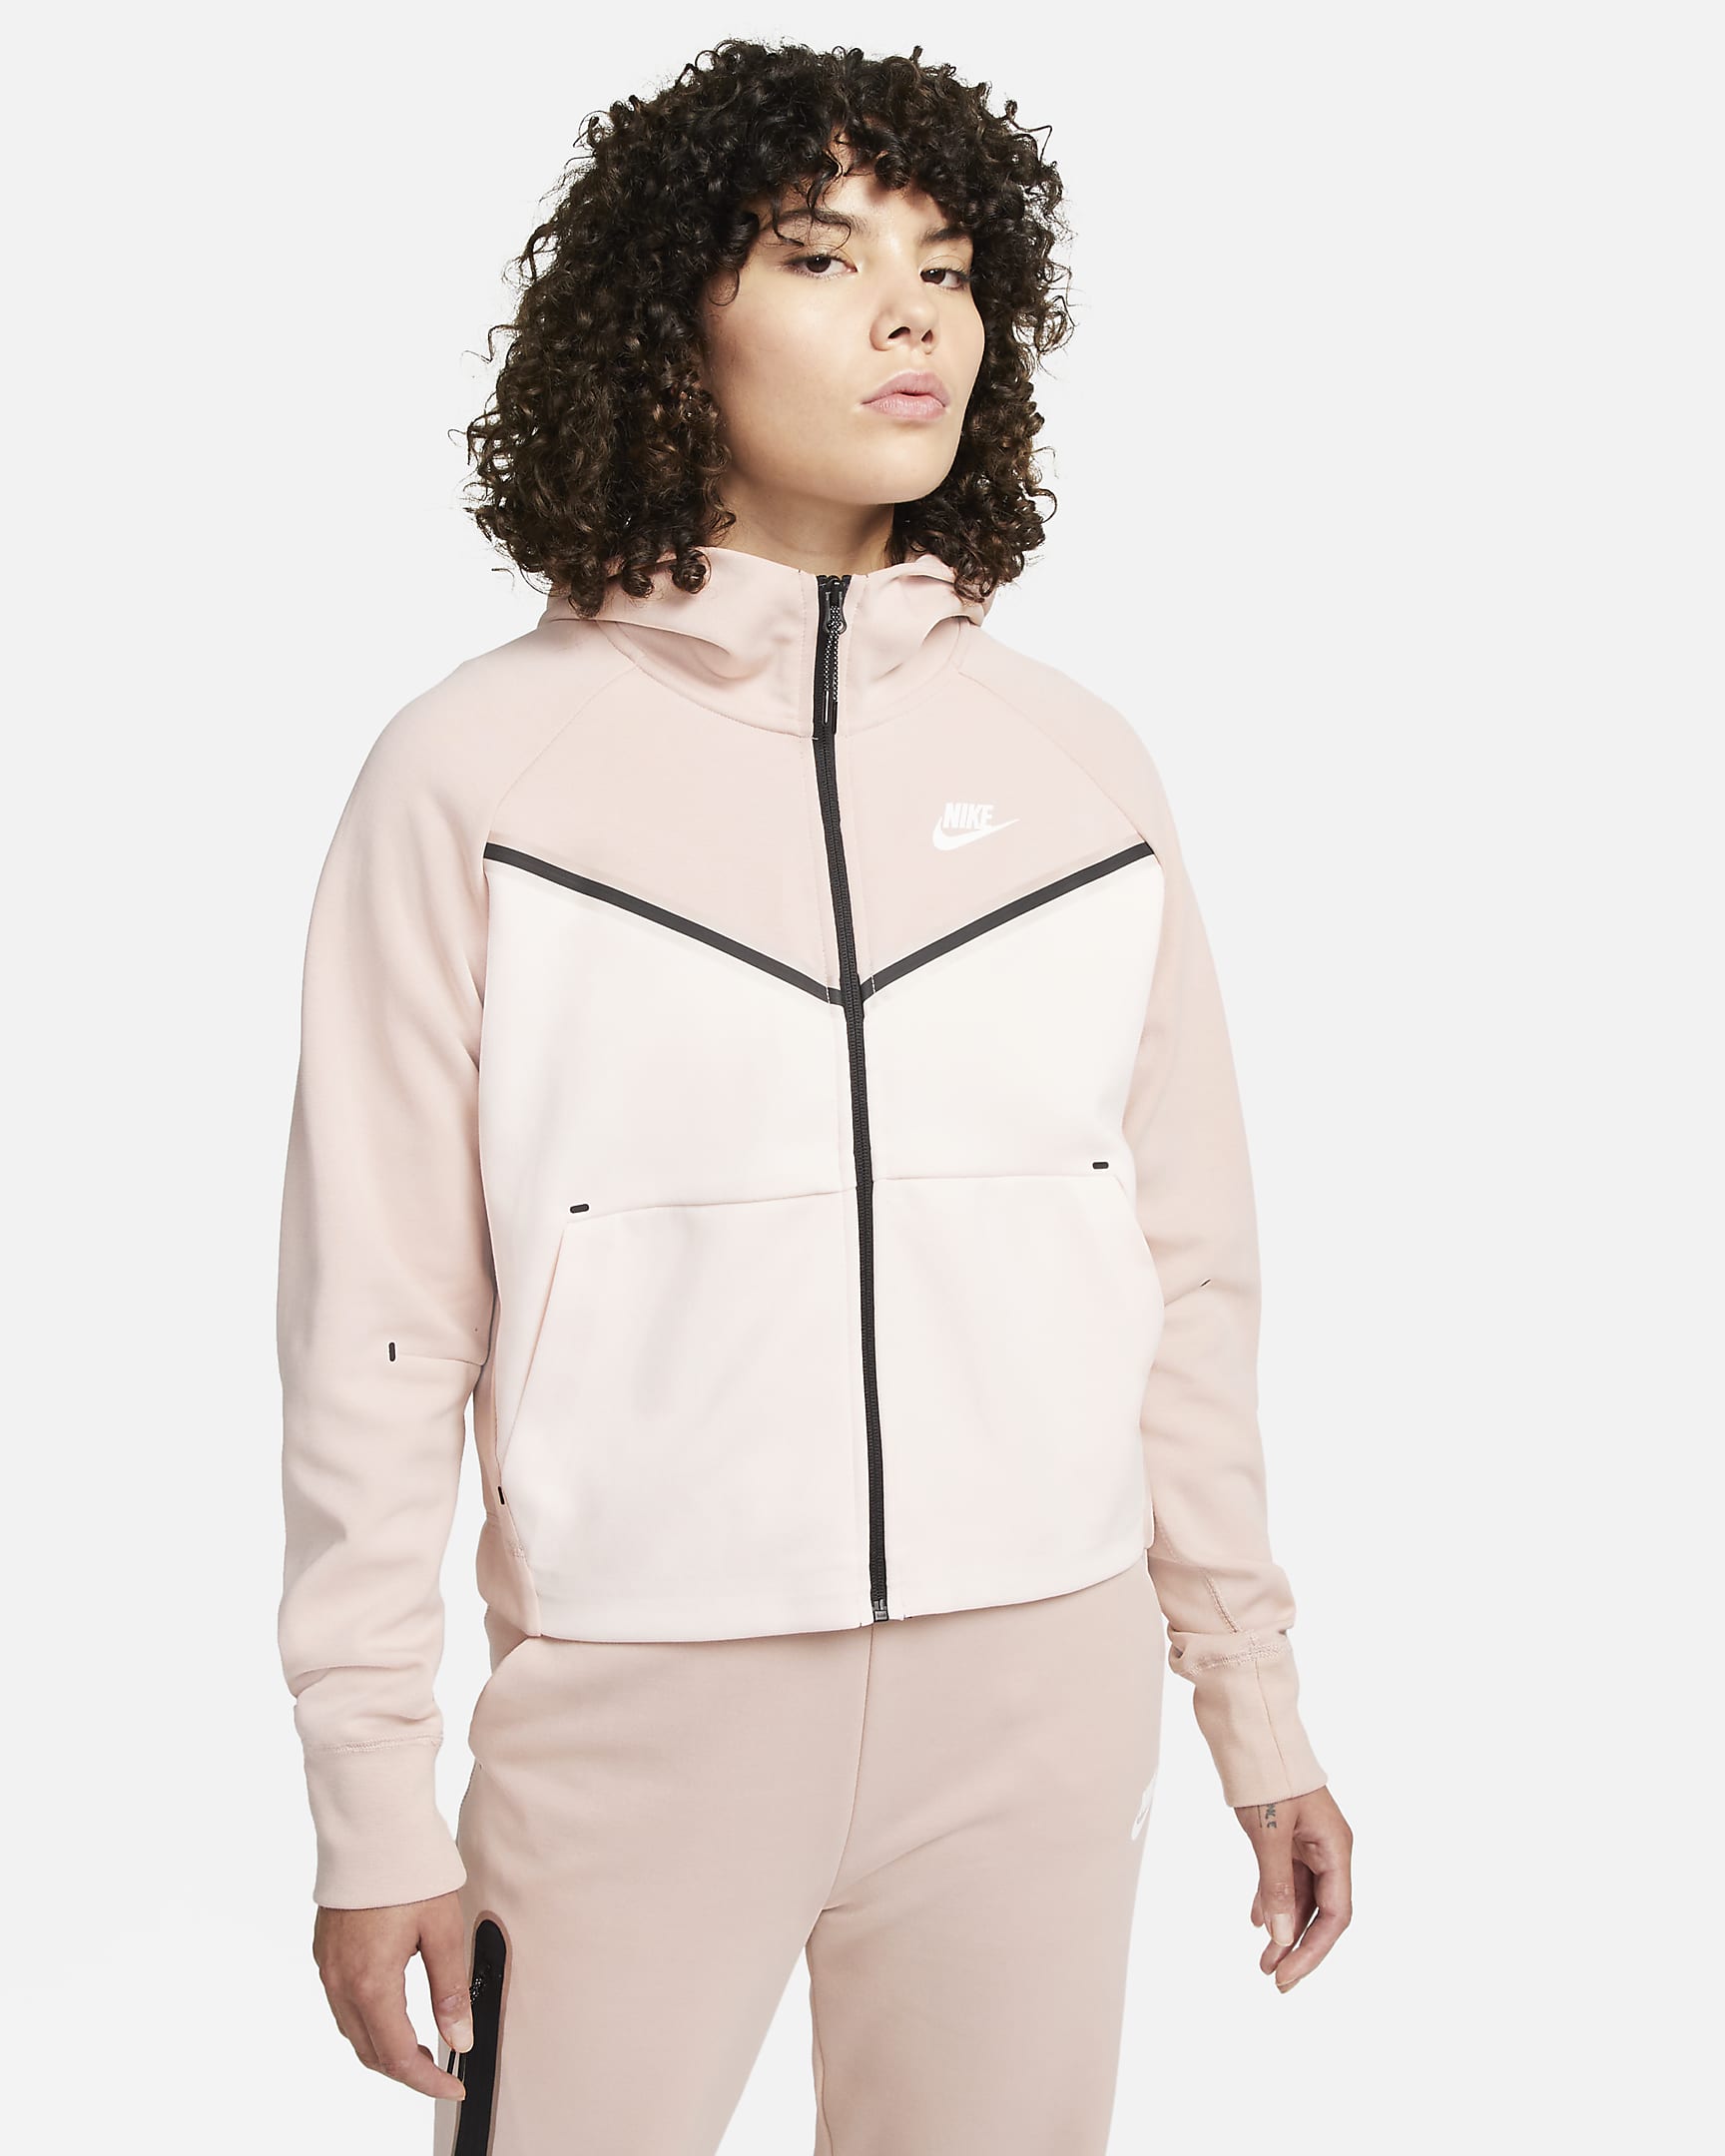 nike-sportswear-tech-fleece-windrunner-womens-full-zip-hoodie-7kK8vl.png